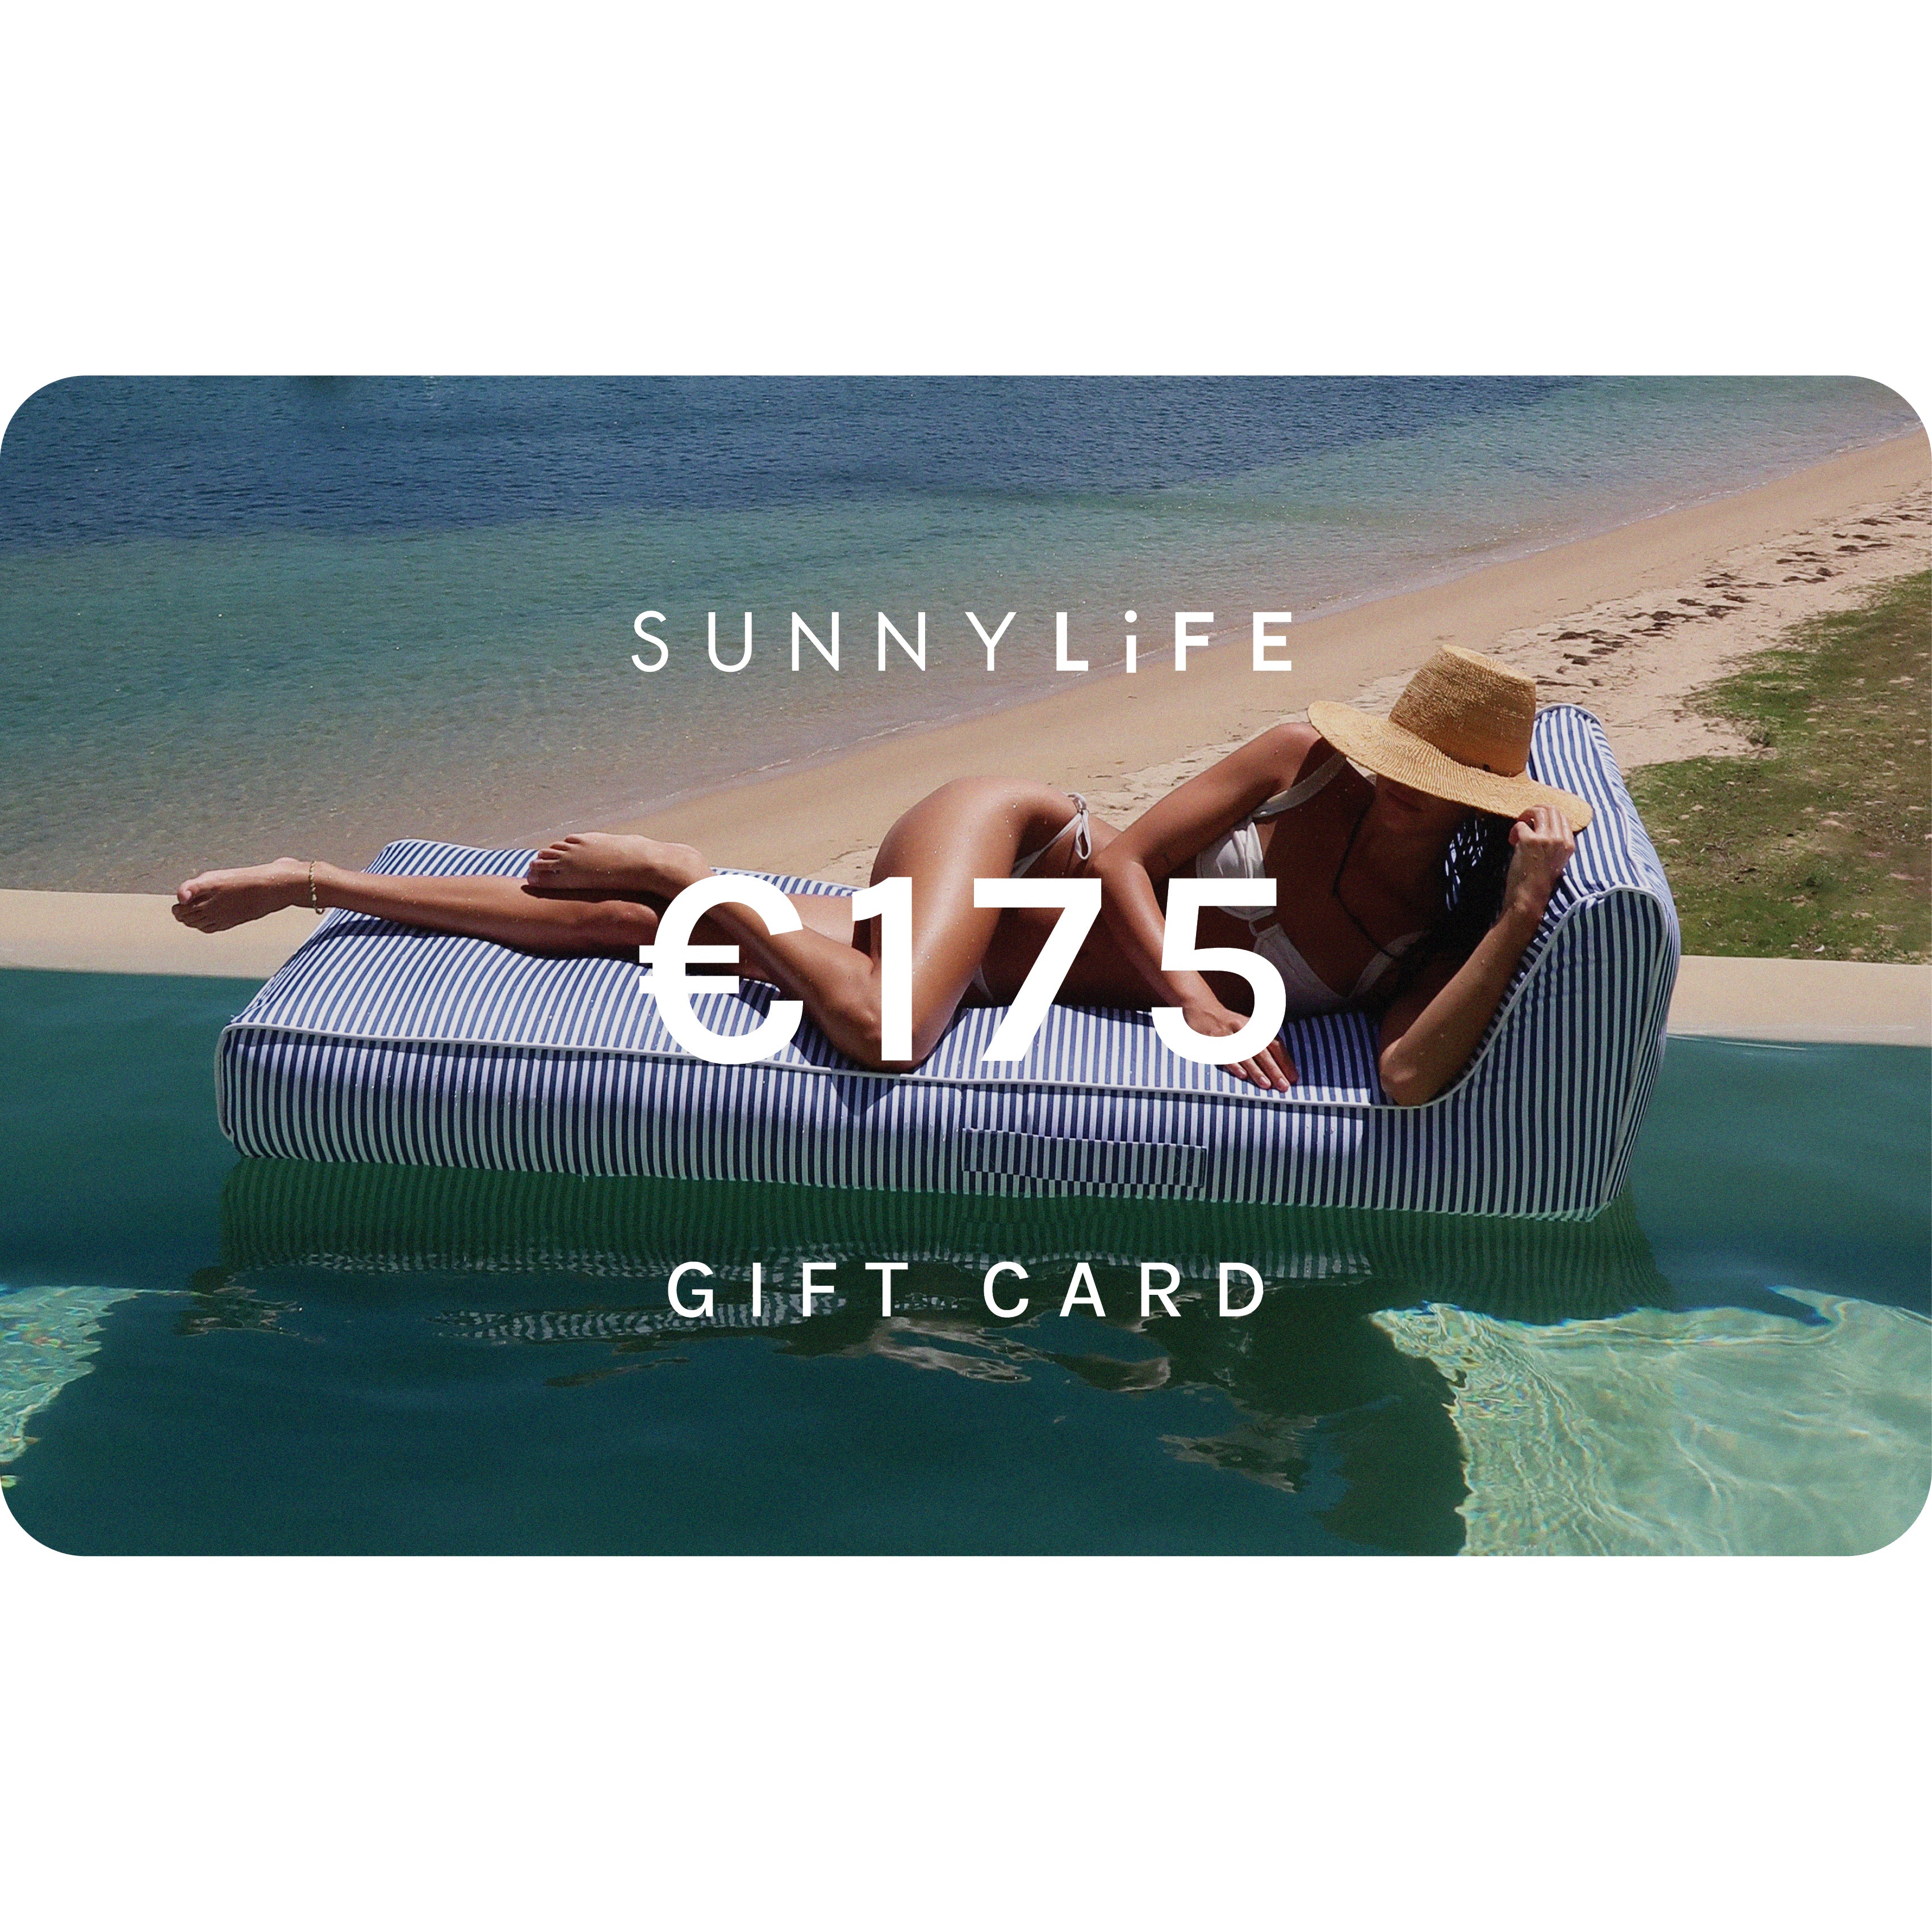 €175 Online E-Gift Card | Sunnylife